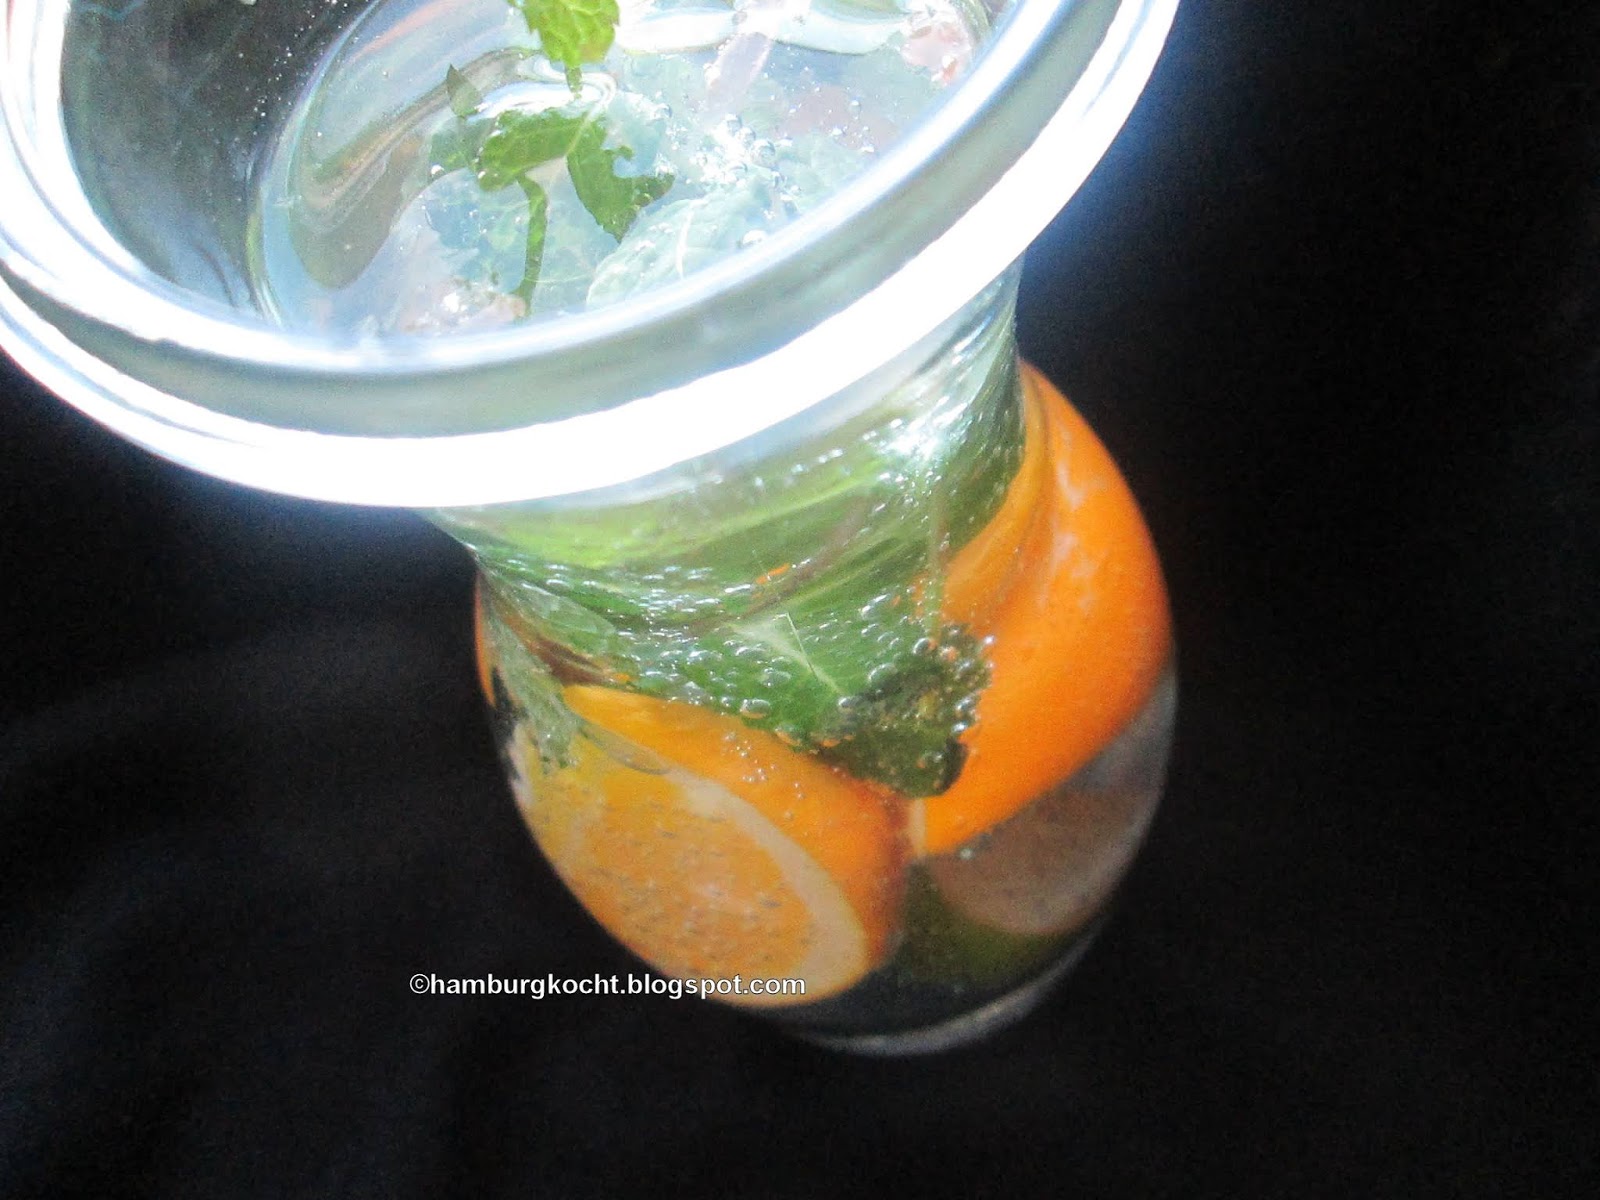 Hamburg kocht!: Infused Water mit Apfelsine und Minze